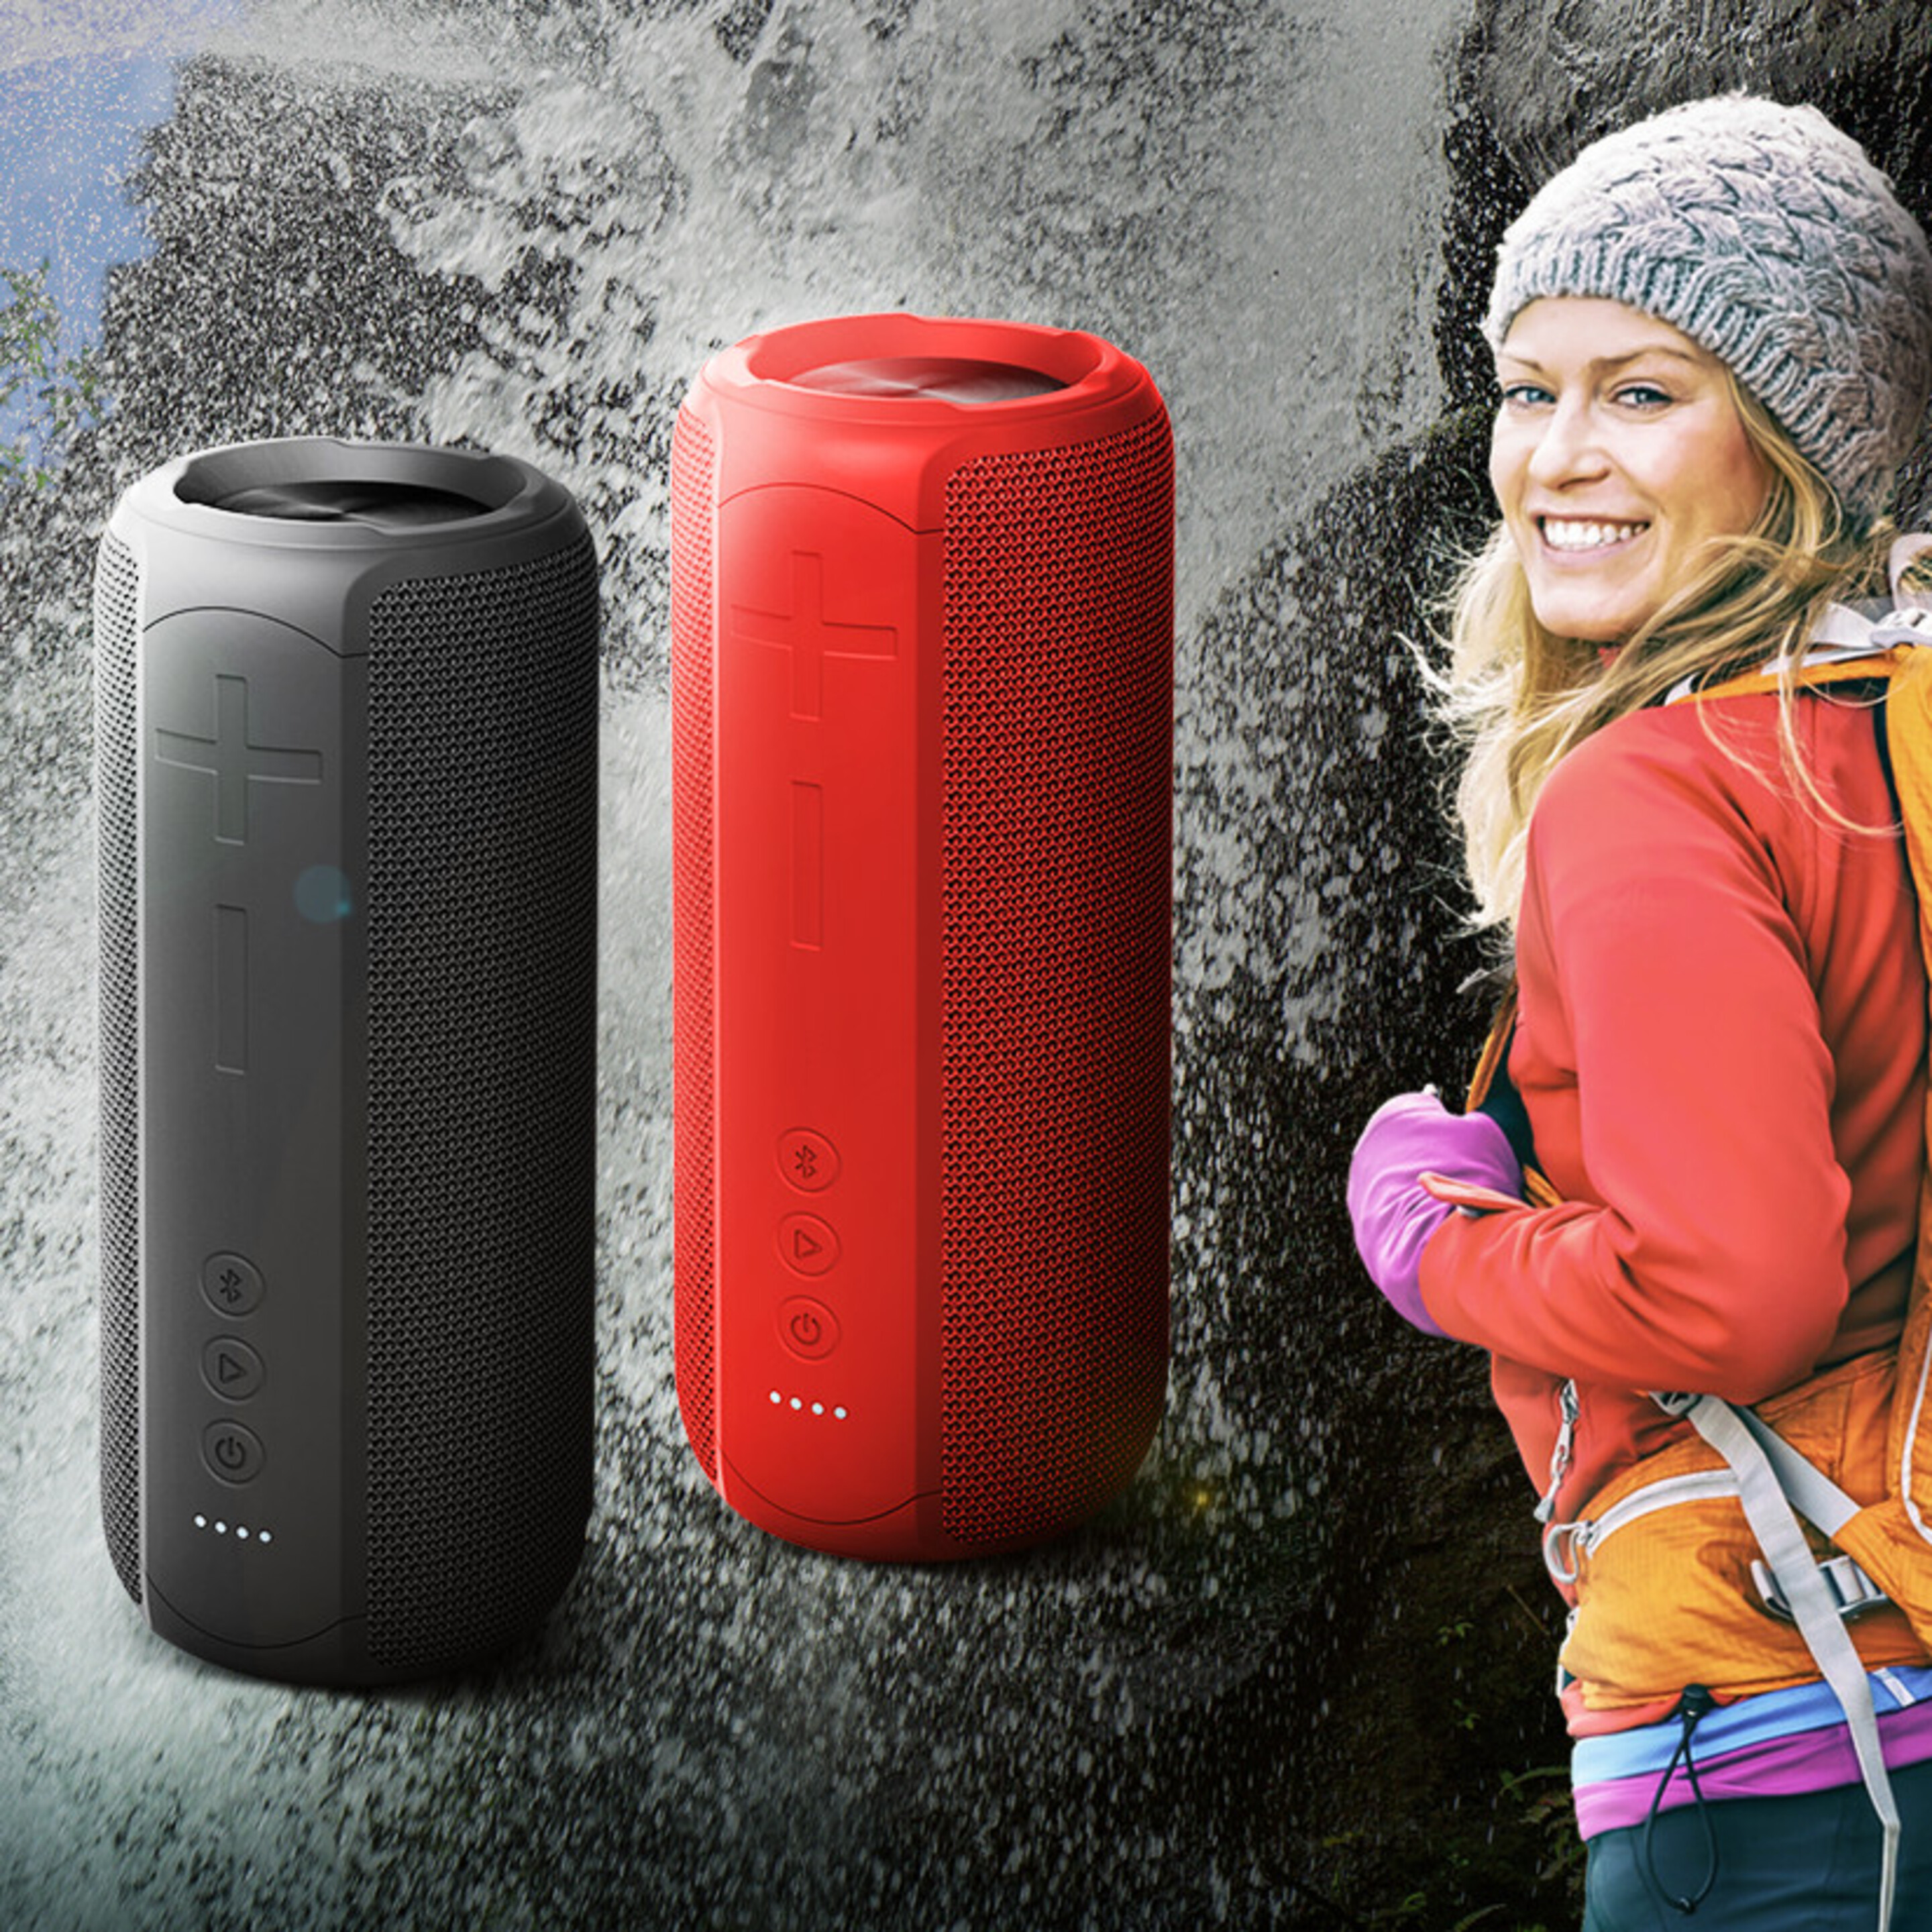 Speaker Bluetooth Forever Toob 20 Bs-900 - Rojo - Altbt  MKP